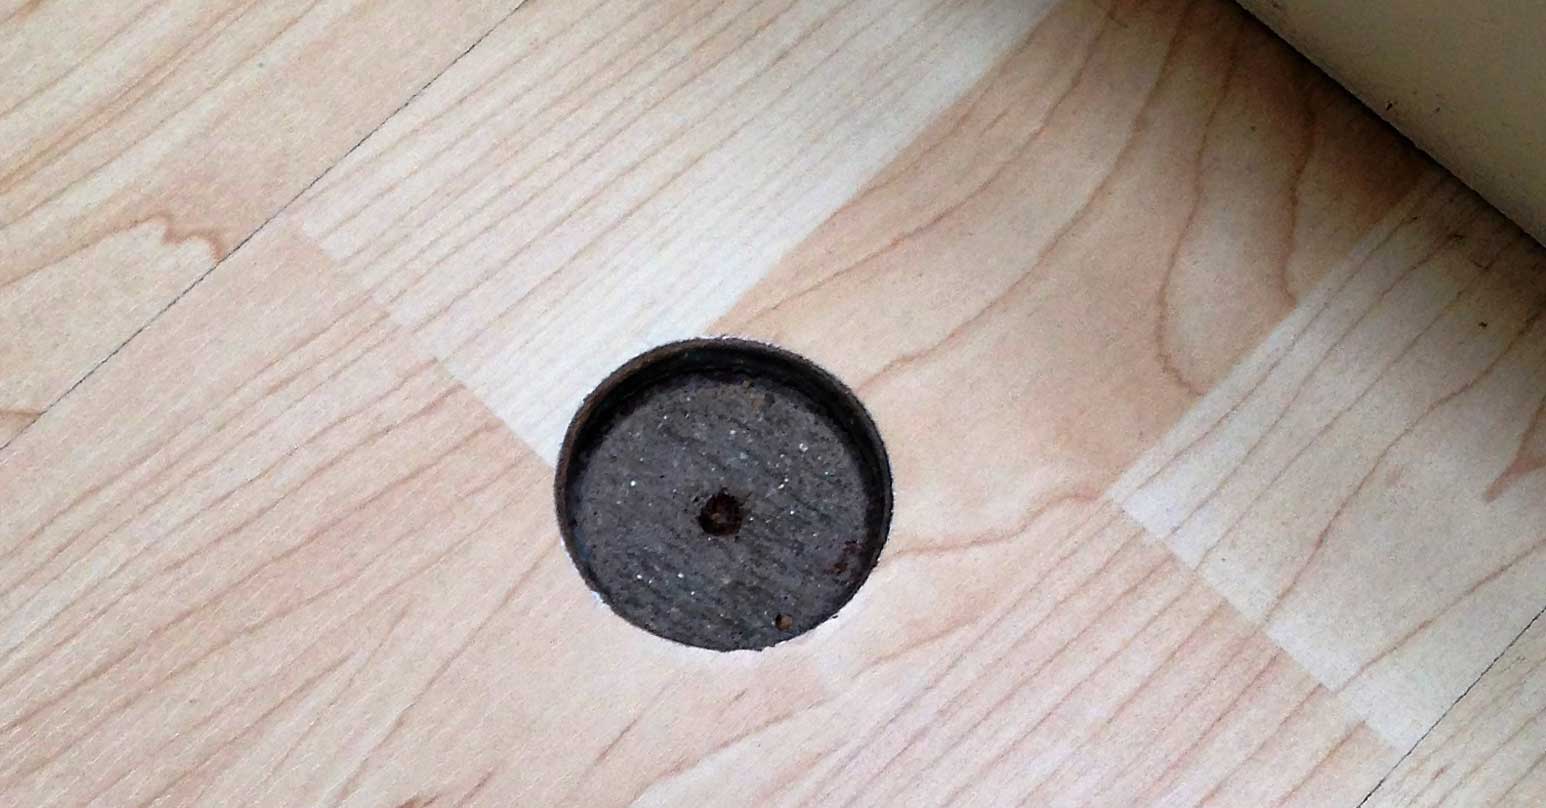 Large hole in wood floor - Before repair